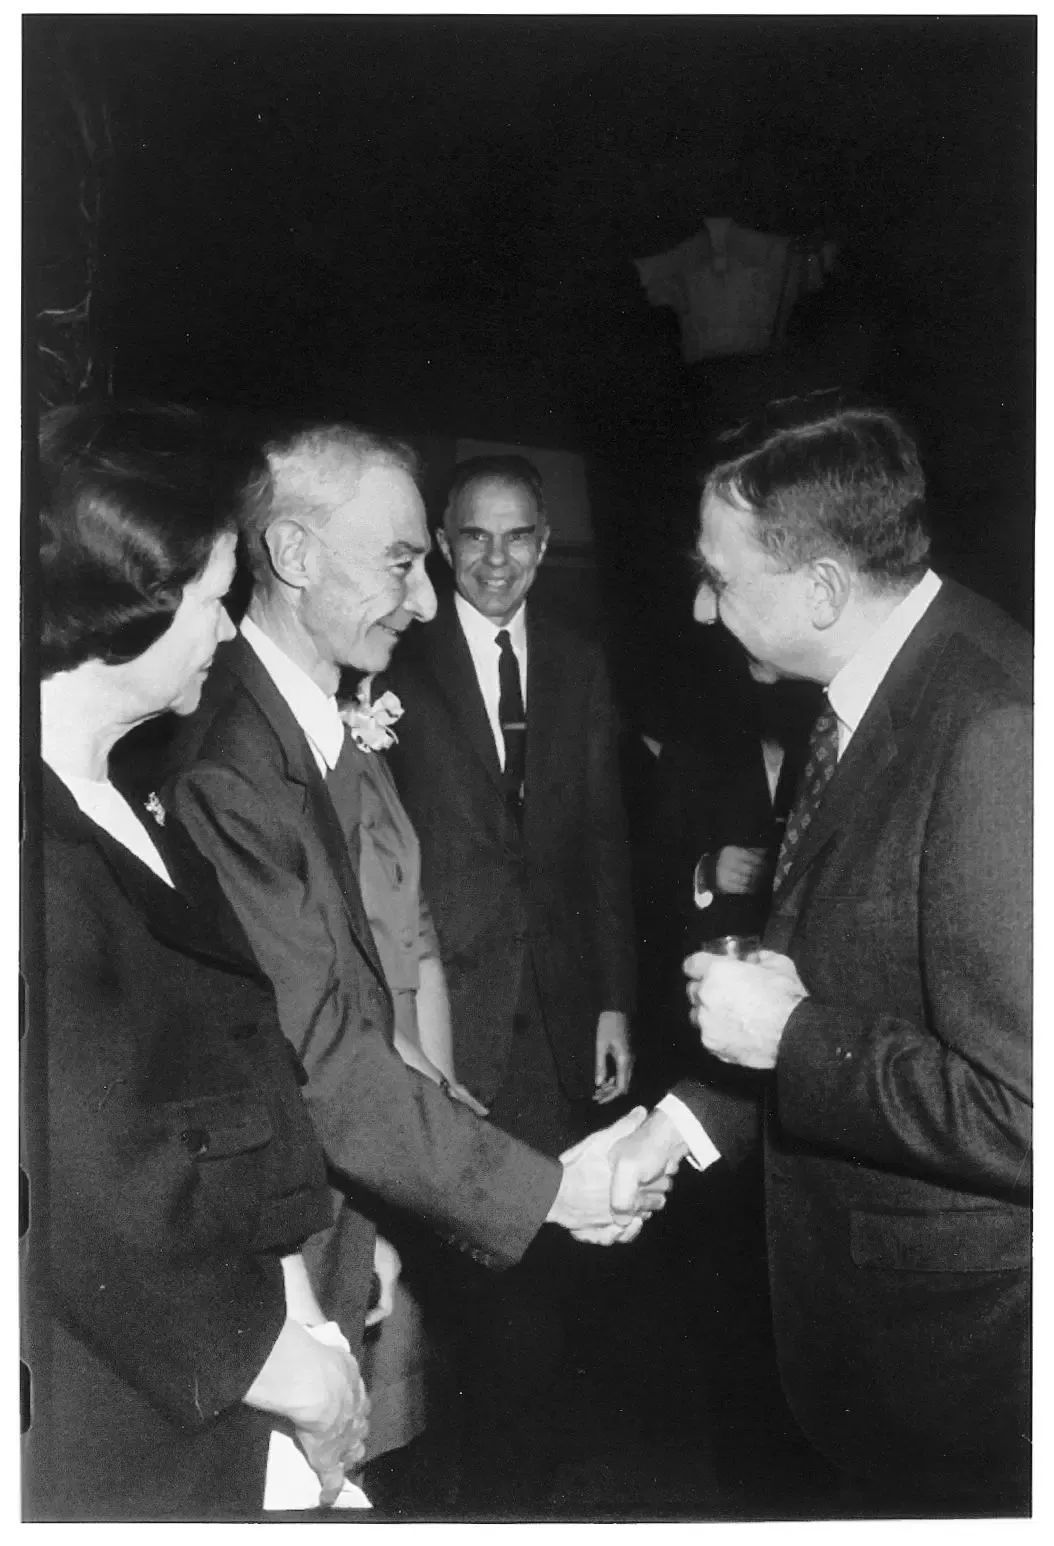 1963年，爱德华·泰勒（右）祝贺奥本海默获得费米奖。奥本海默面露微笑与他握手，姬蒂则面无表情地站在丈夫身边。